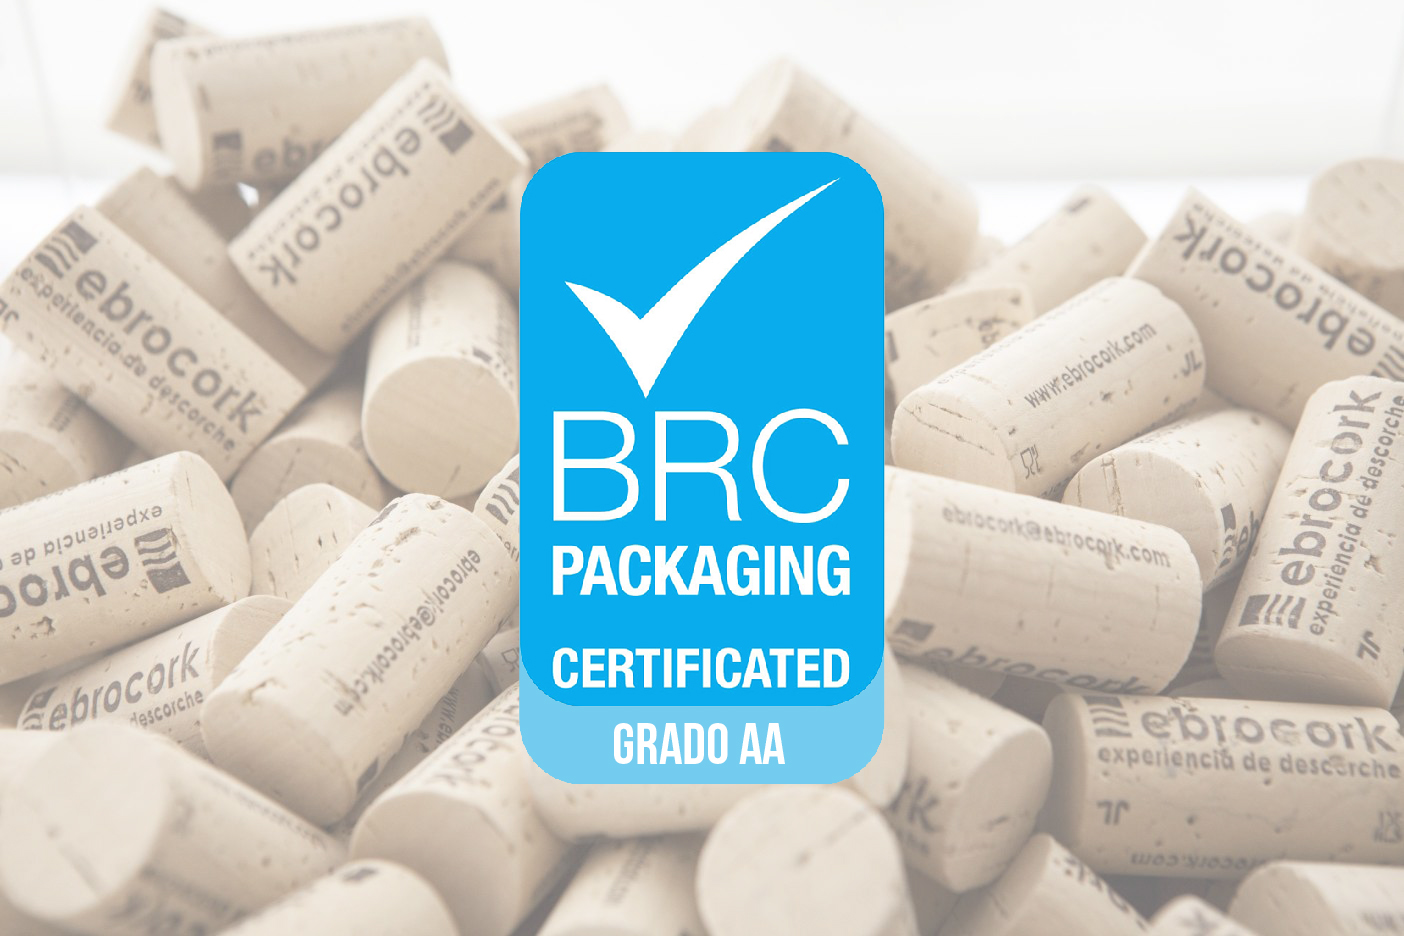 Ebrocork cuenta desde hace años con el certificado BRC/IoP grado AA en todo su proceso productivo de tapones de corcho